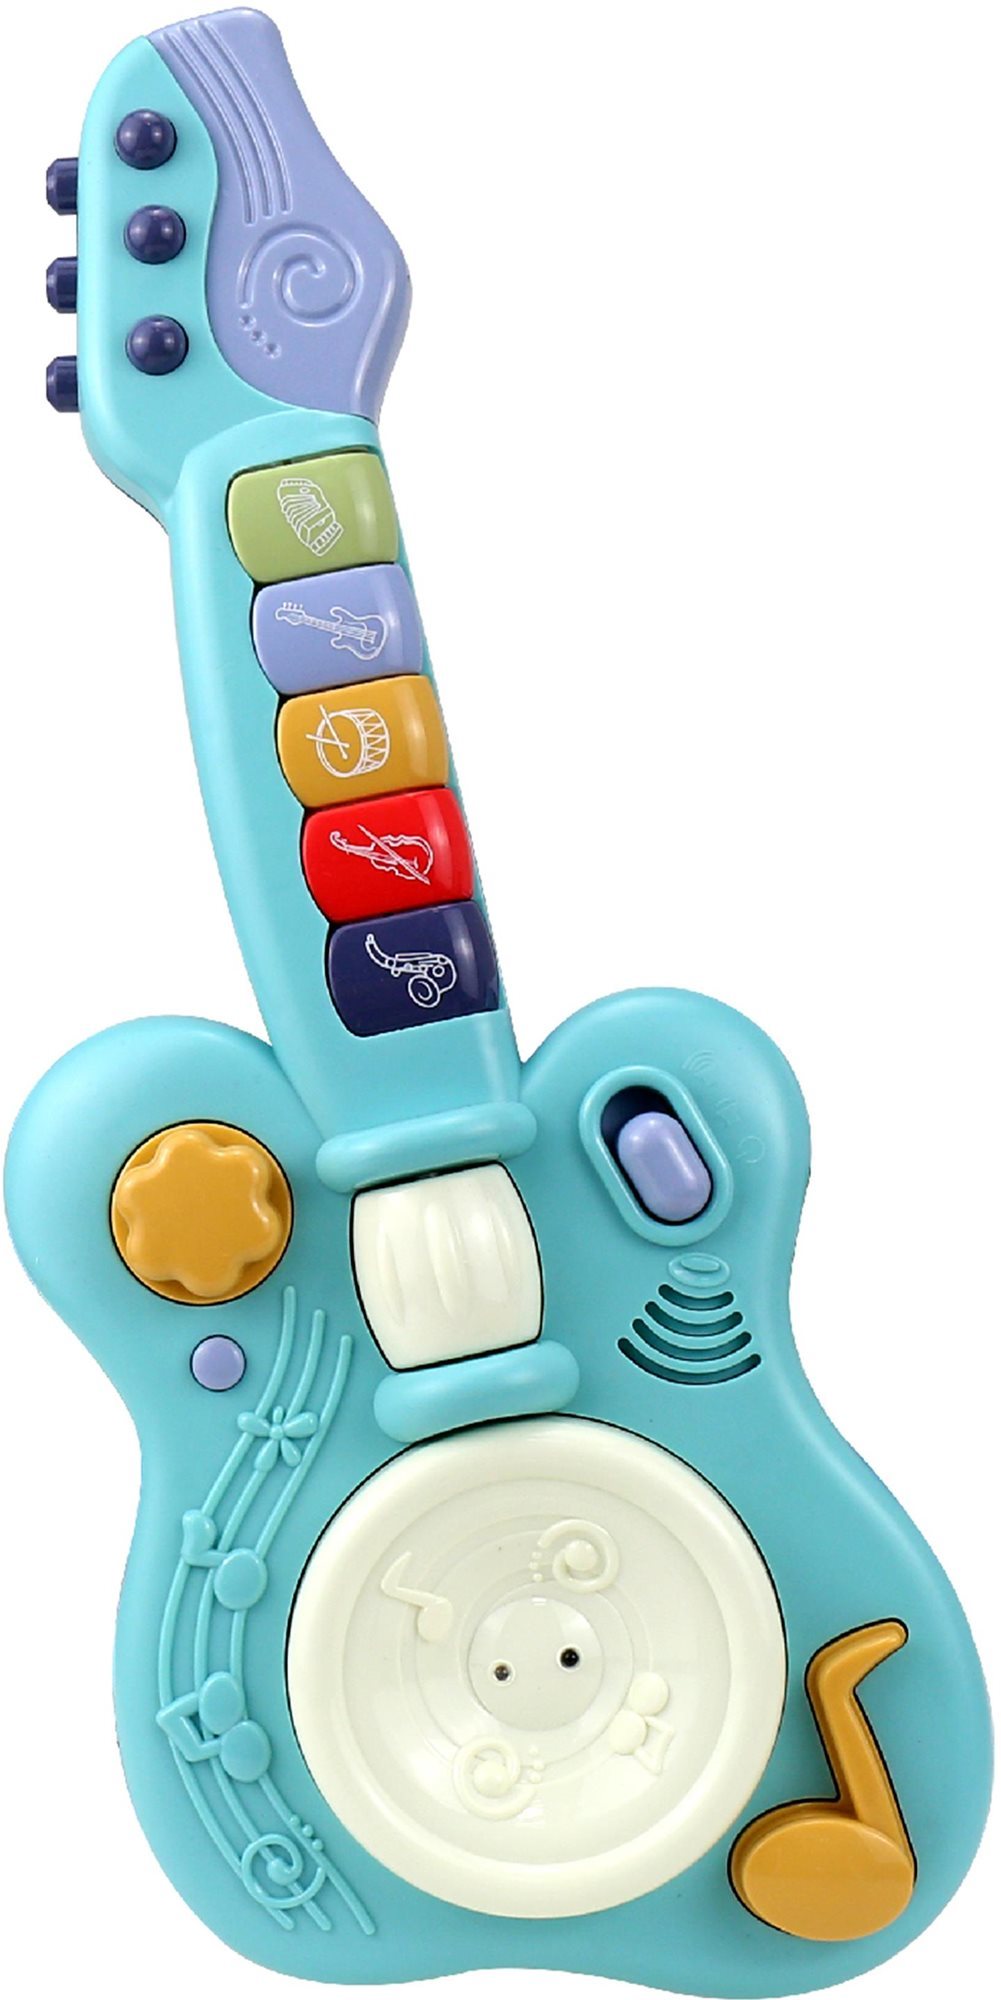 Aga4Kids Detská interaktívna gitara, modrá